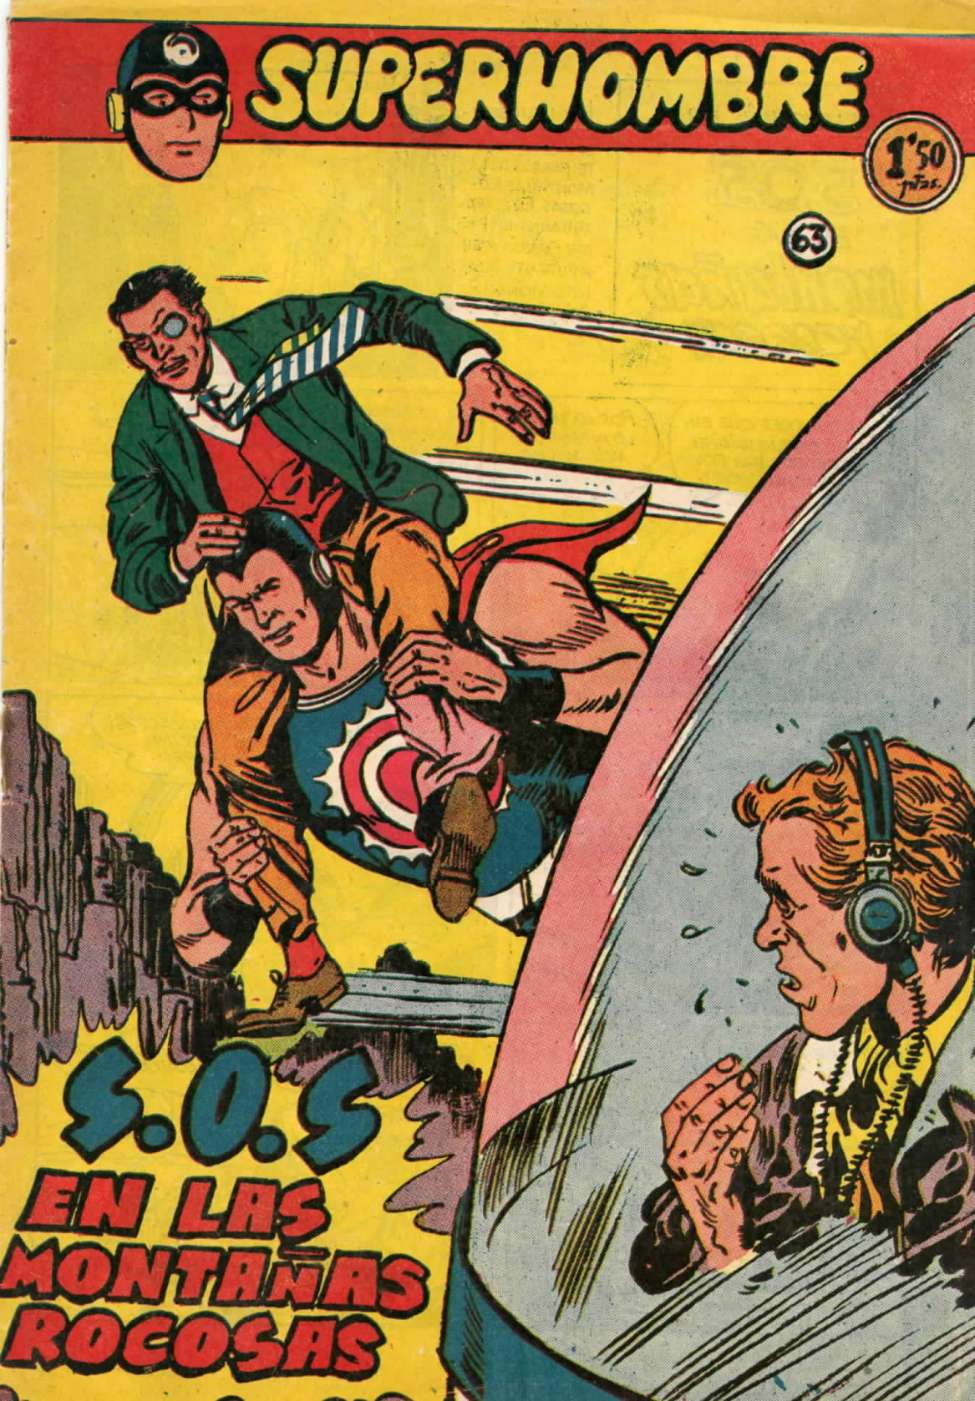 Comic Book Cover For SuperHombre 63 SOS en las Montanas Rocosas